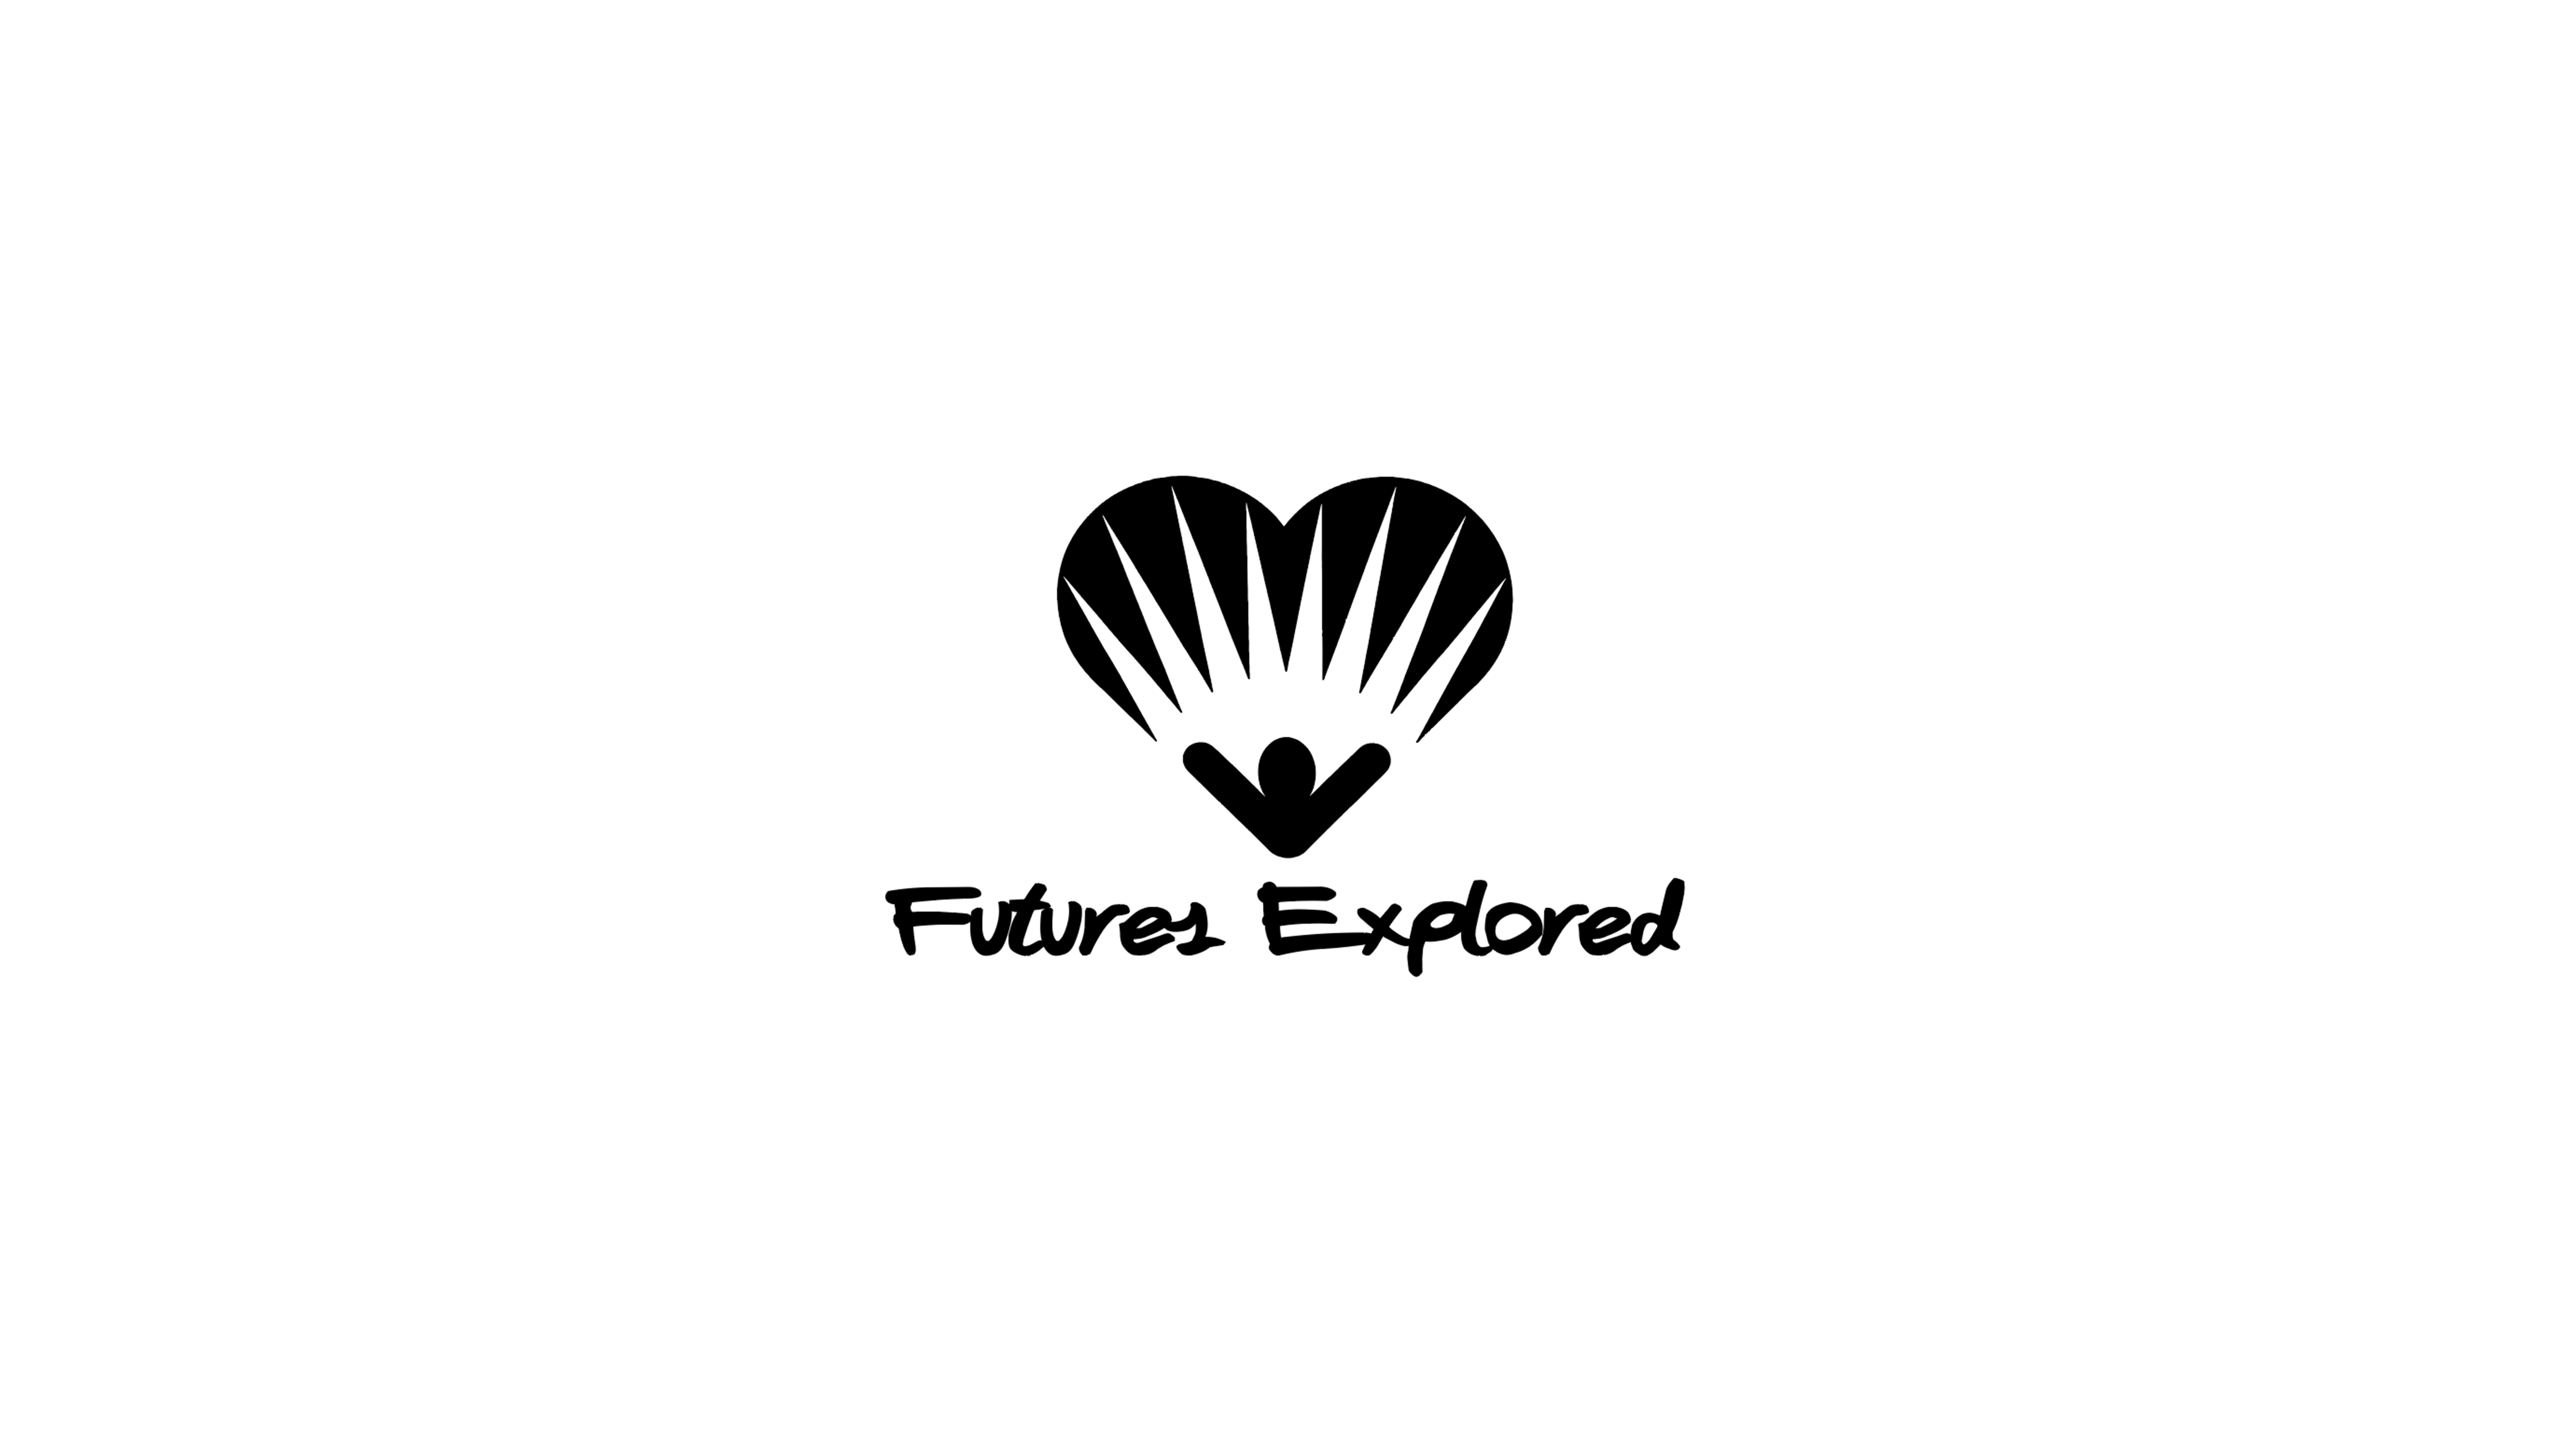 Futures Explored